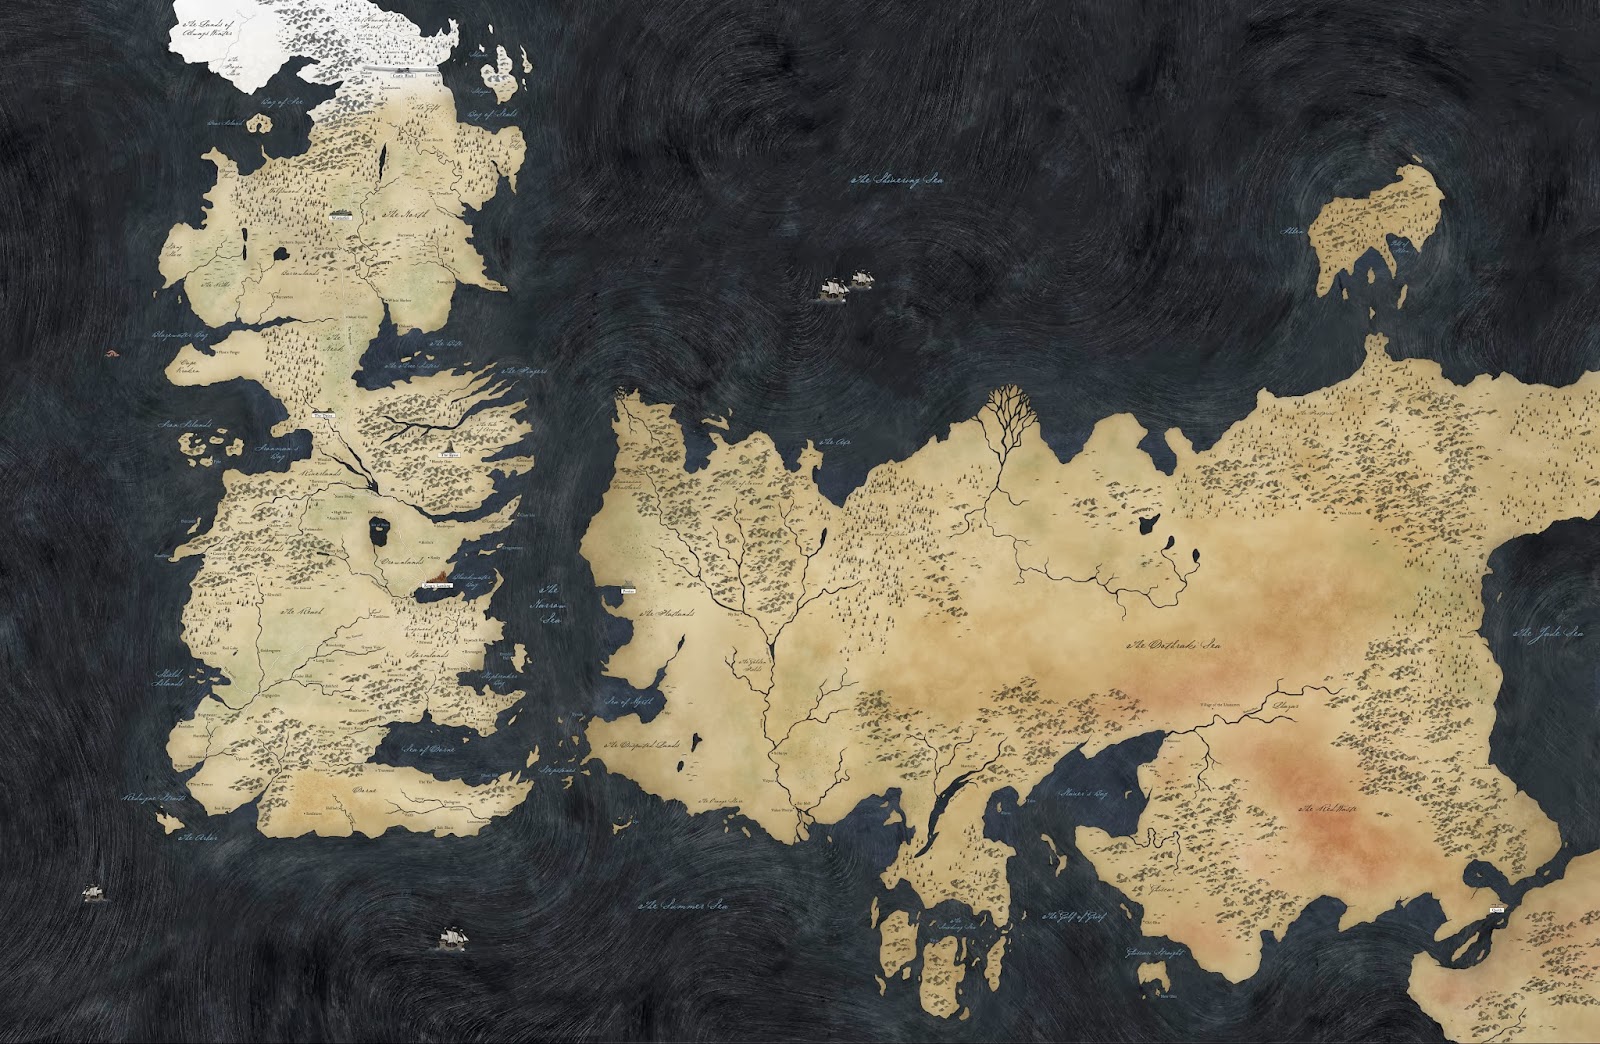 a-game-of-thrones-world-map-westeros-essos.jpg